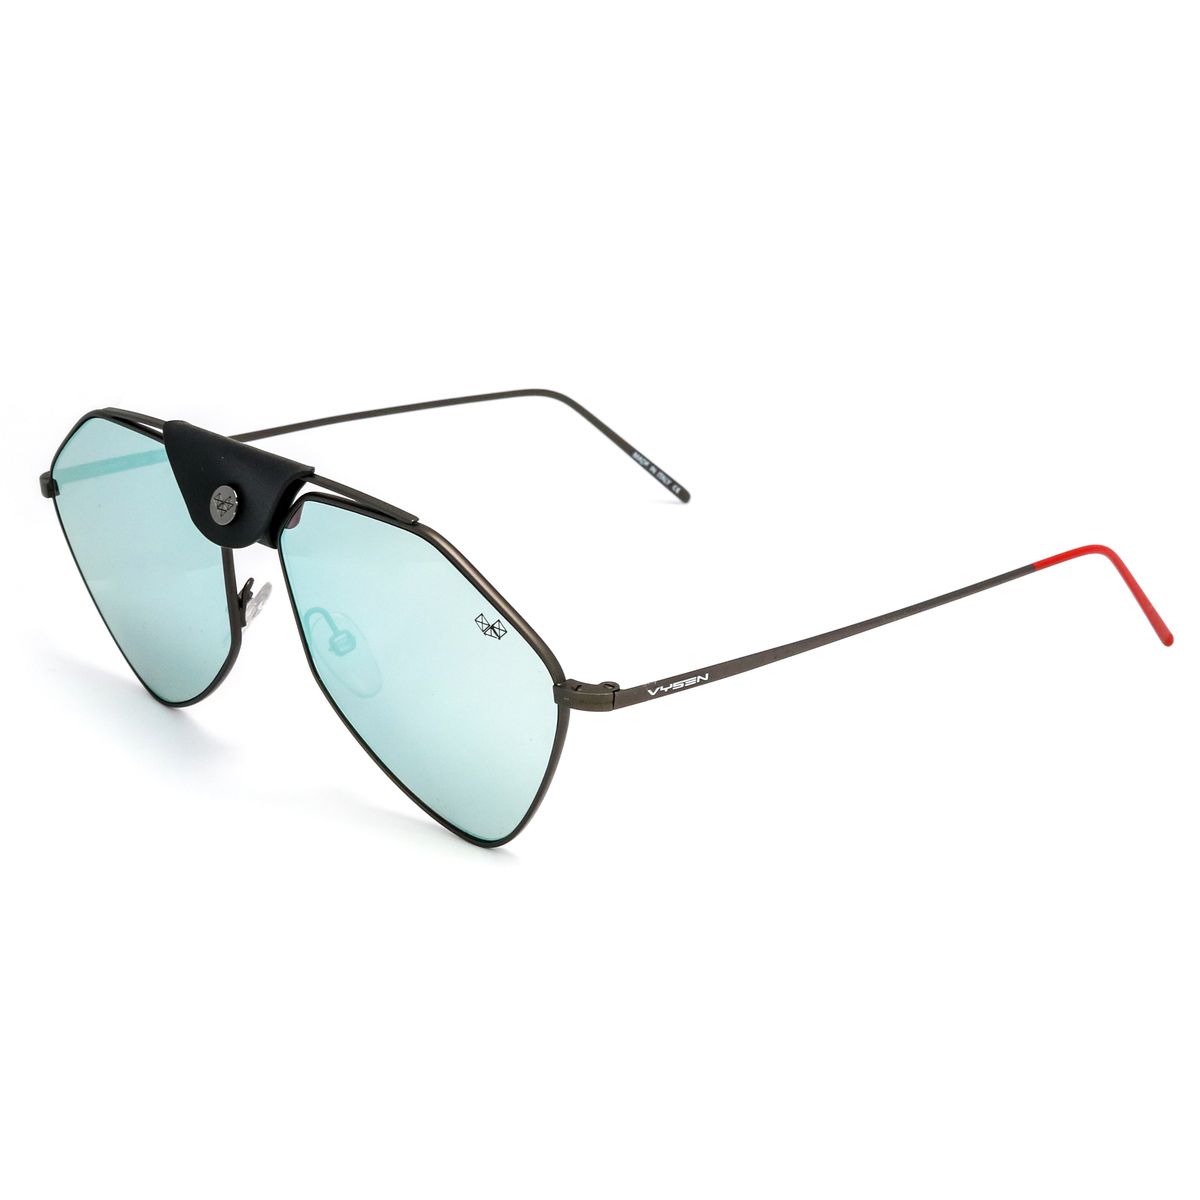 LETEC Pilot Sunglasses LT 2S - size 58